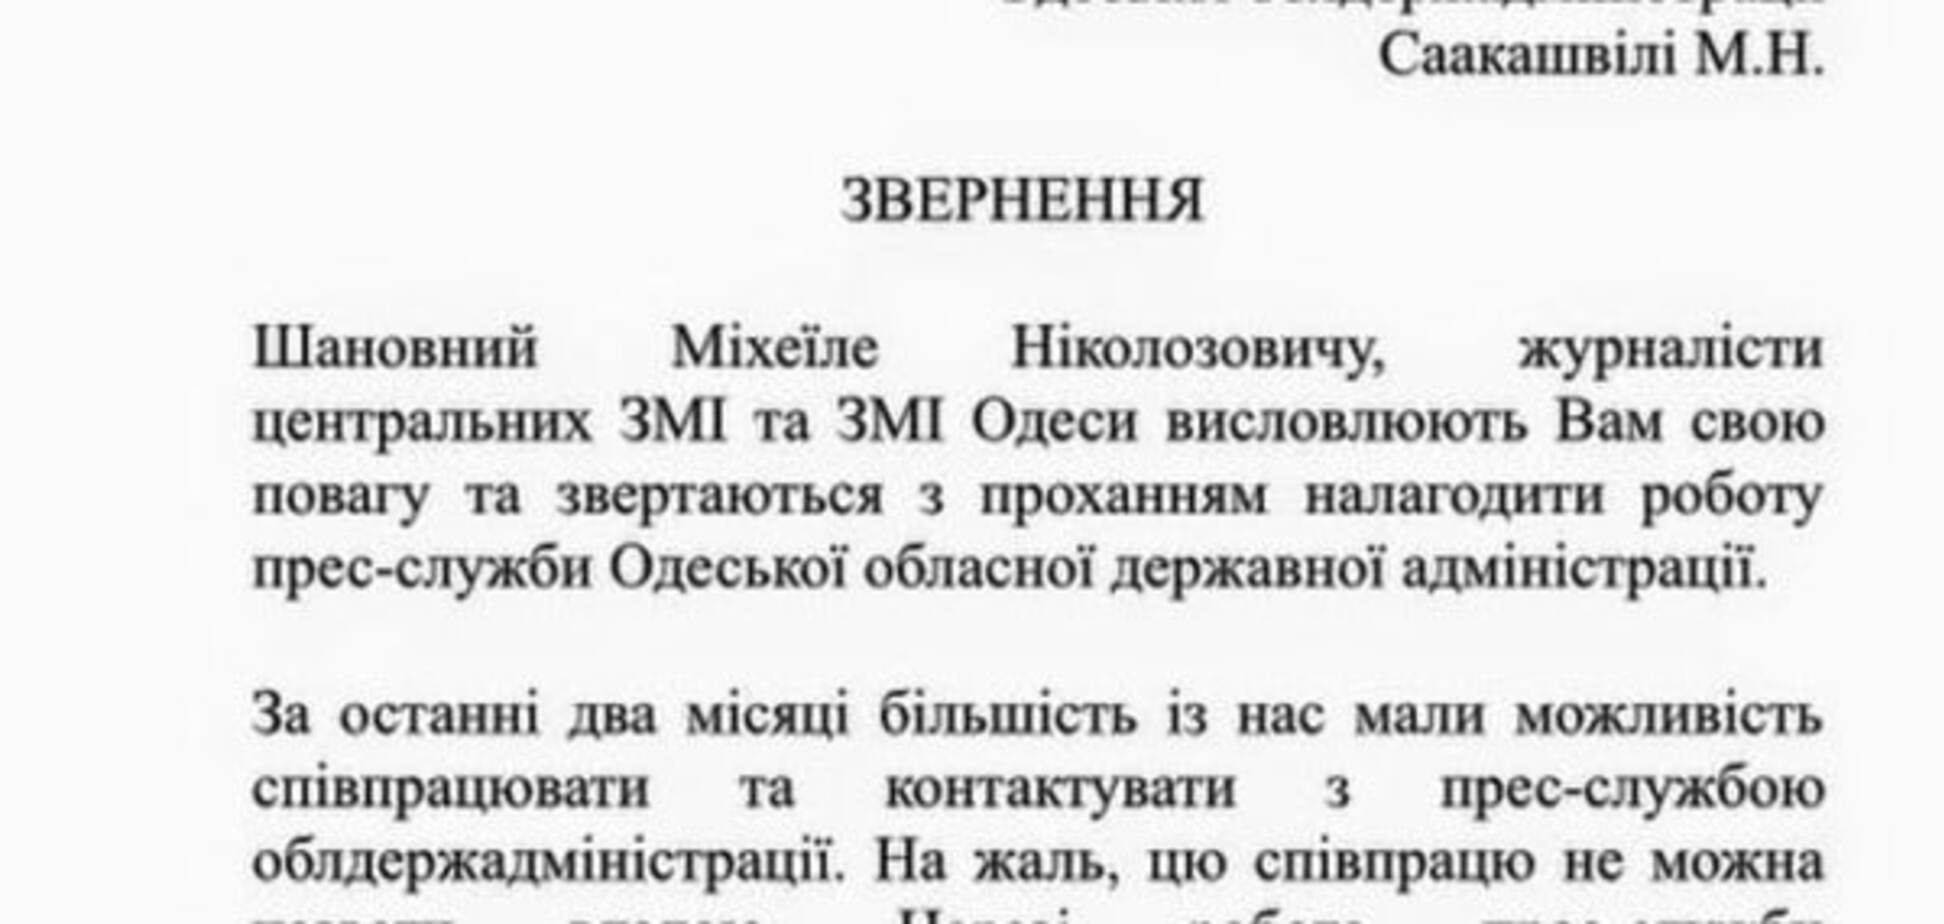 Обвинение в адрес пресс-службы Саакашвили